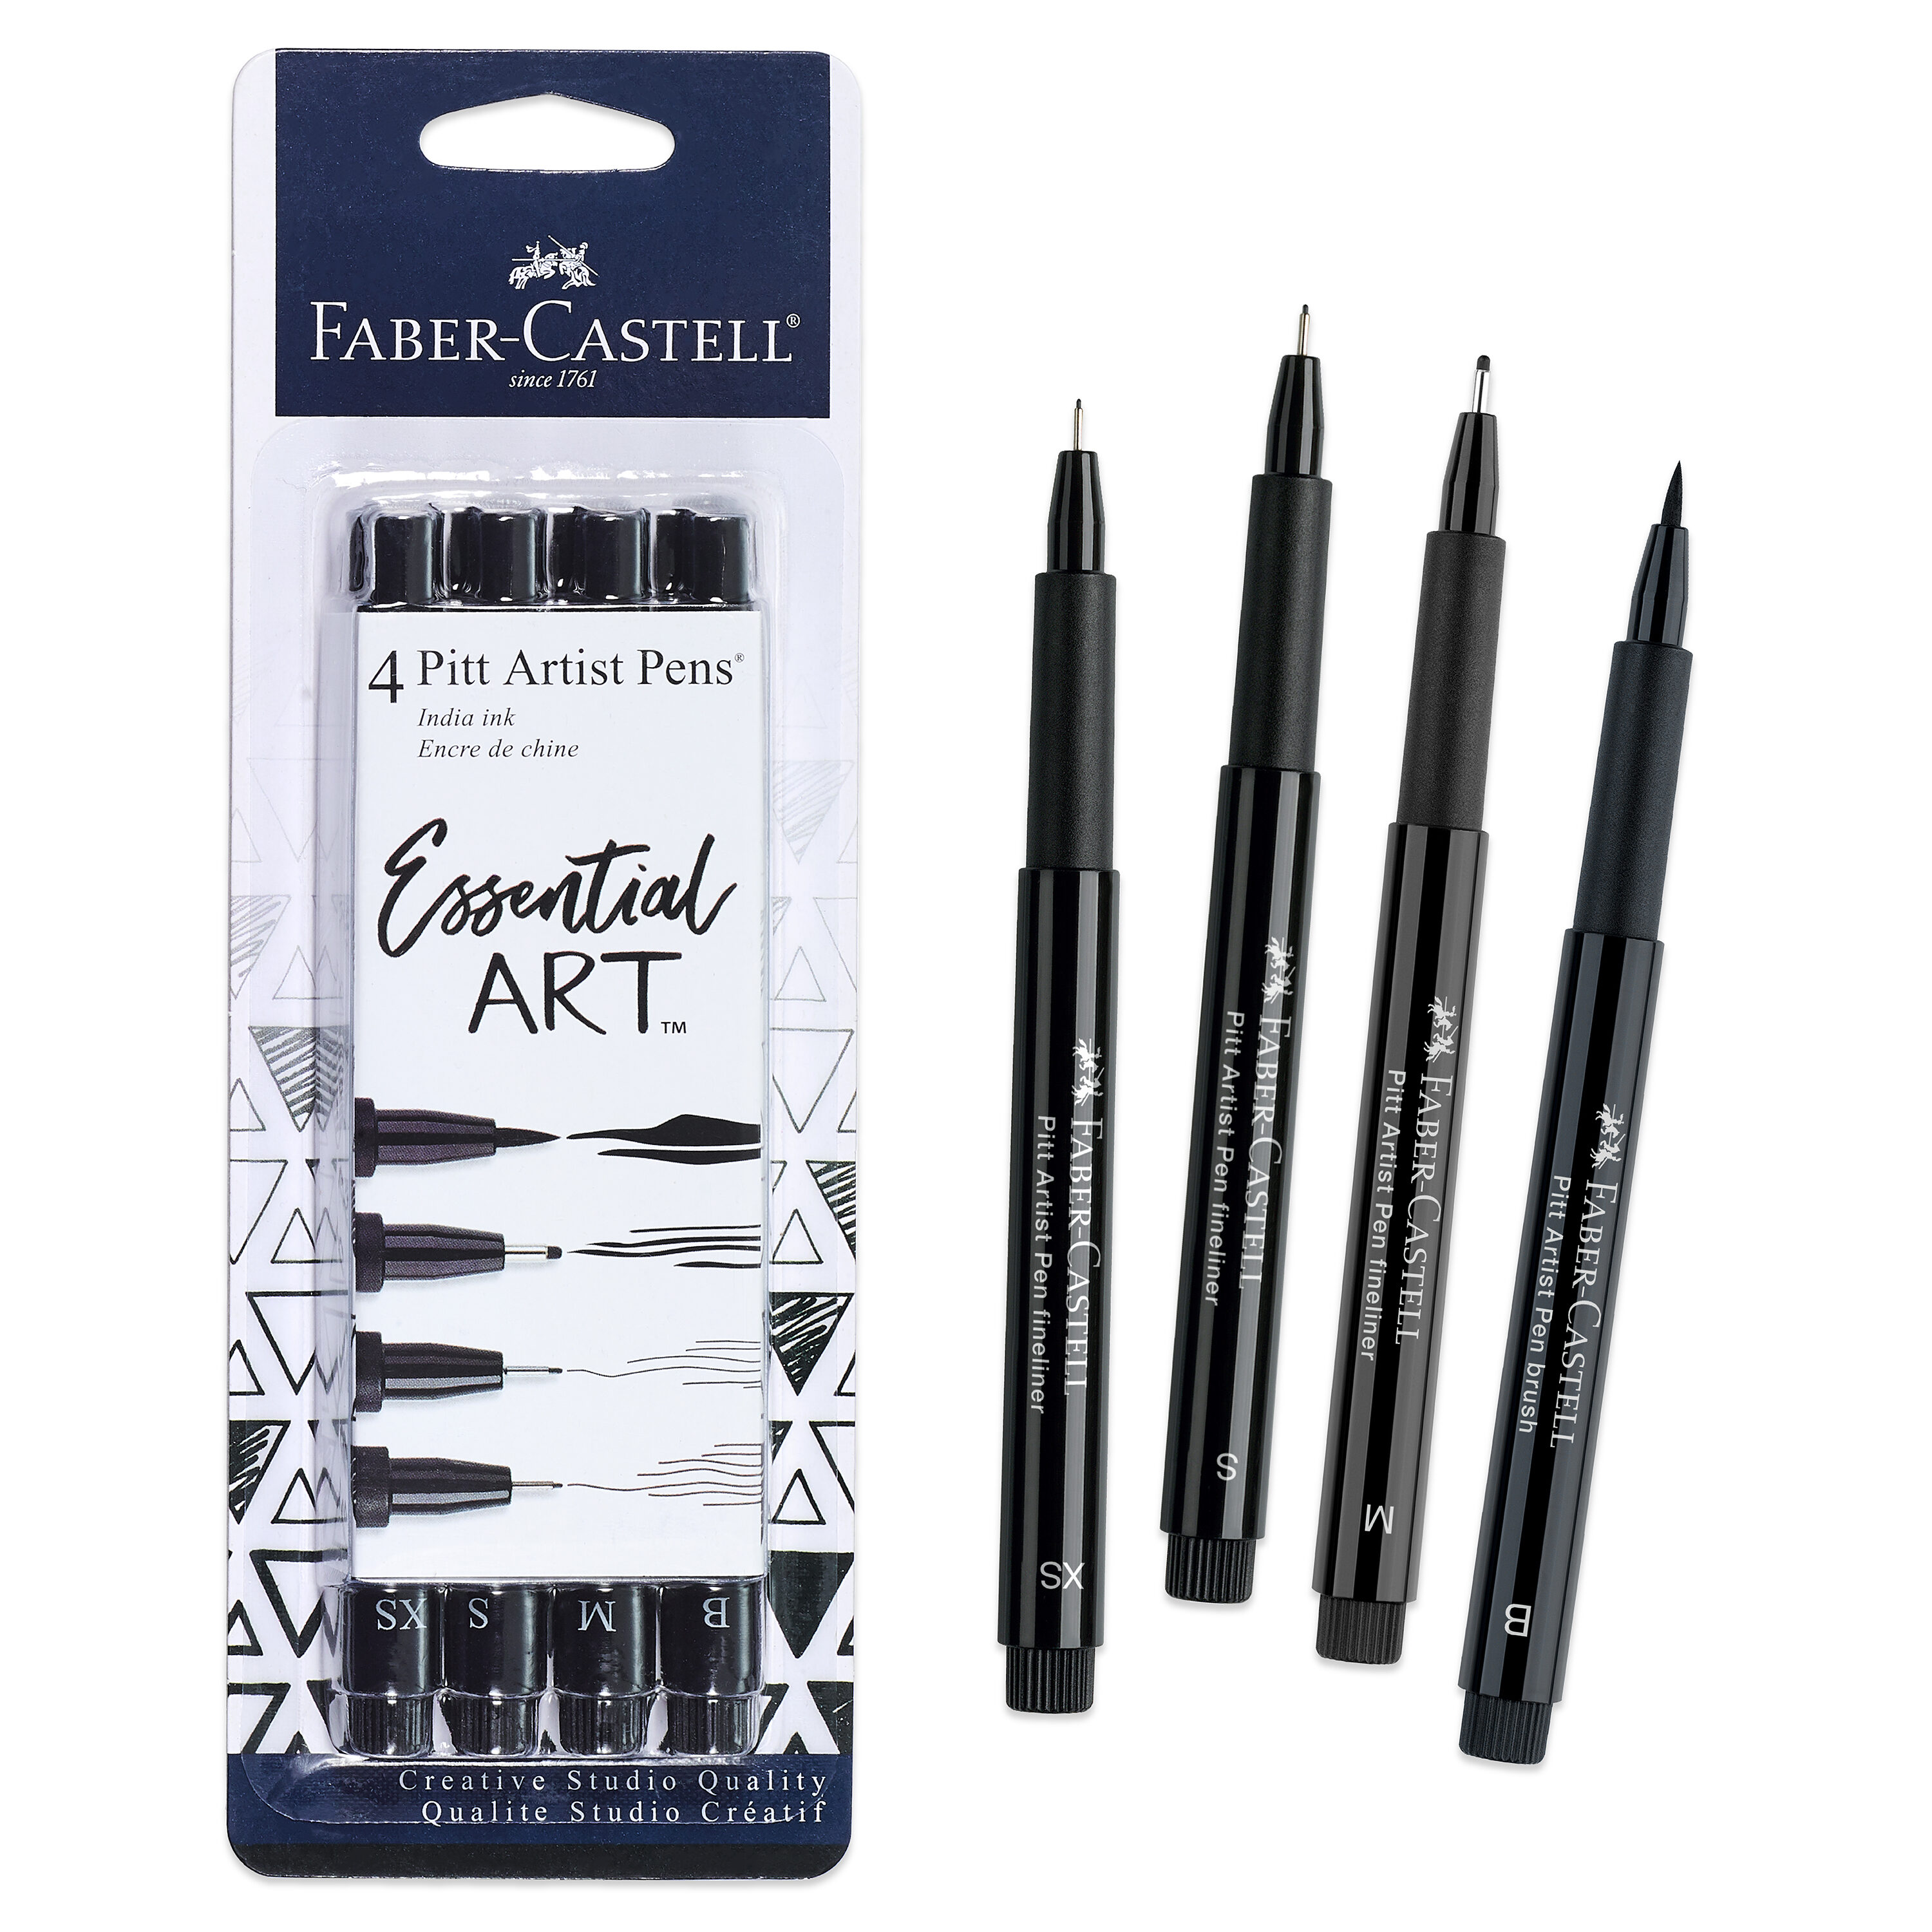 Faber-Castell Faber-Castell Pitt Artist Pen Set - Essential Art, 4